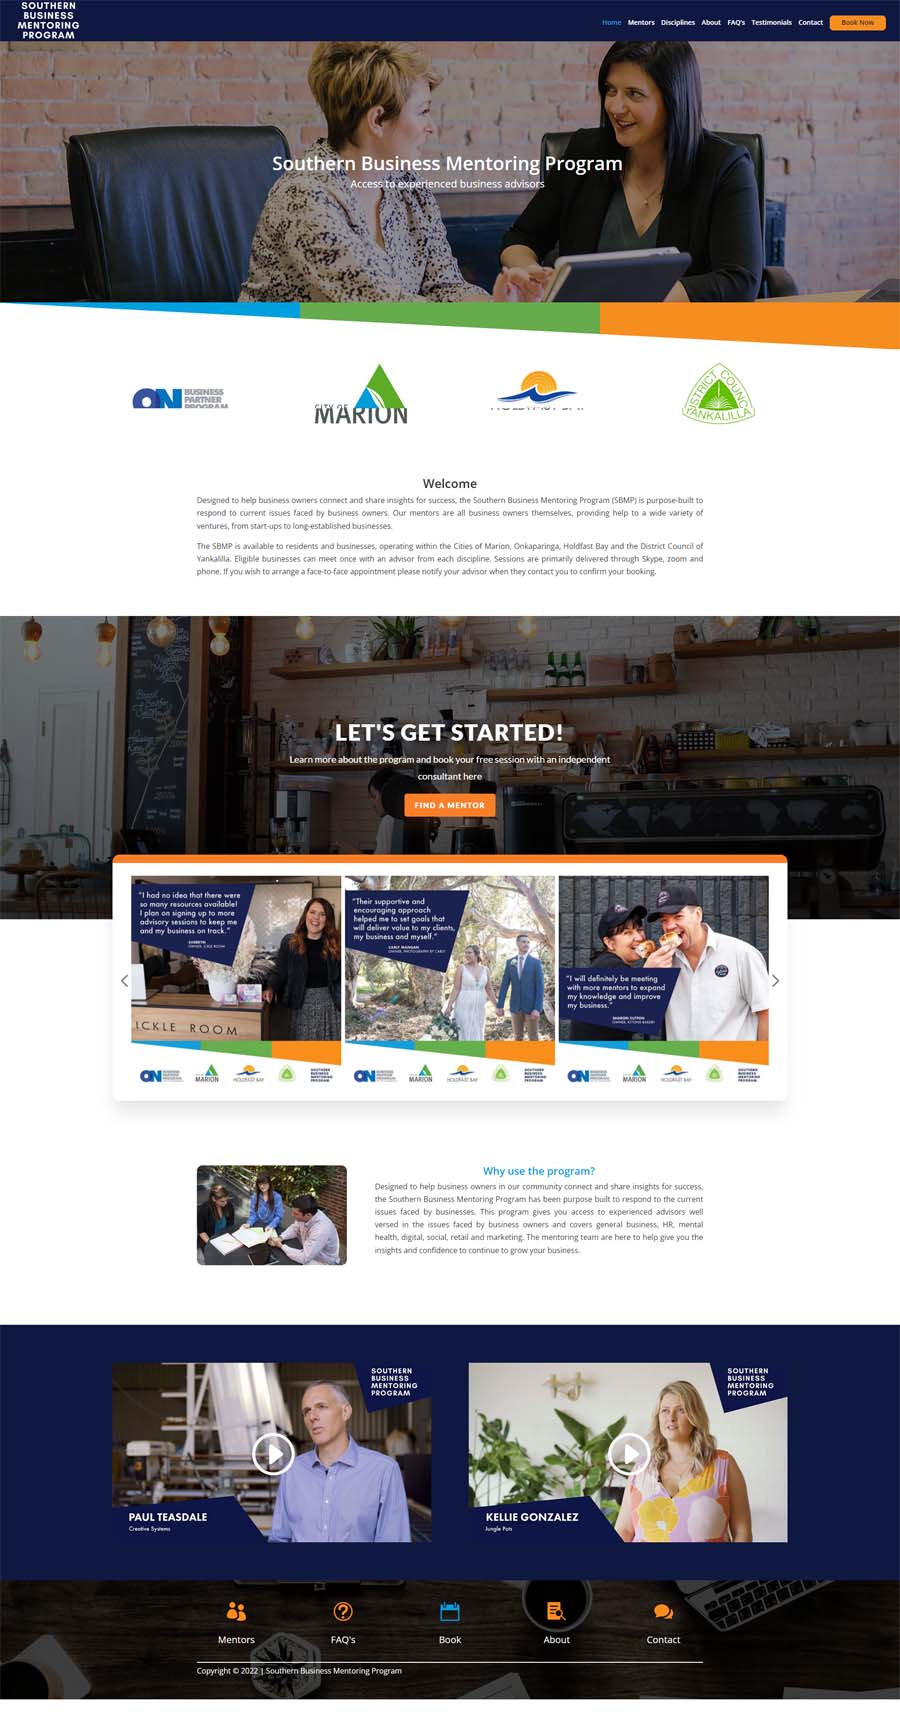 Website Design Adelaide - Quality Control